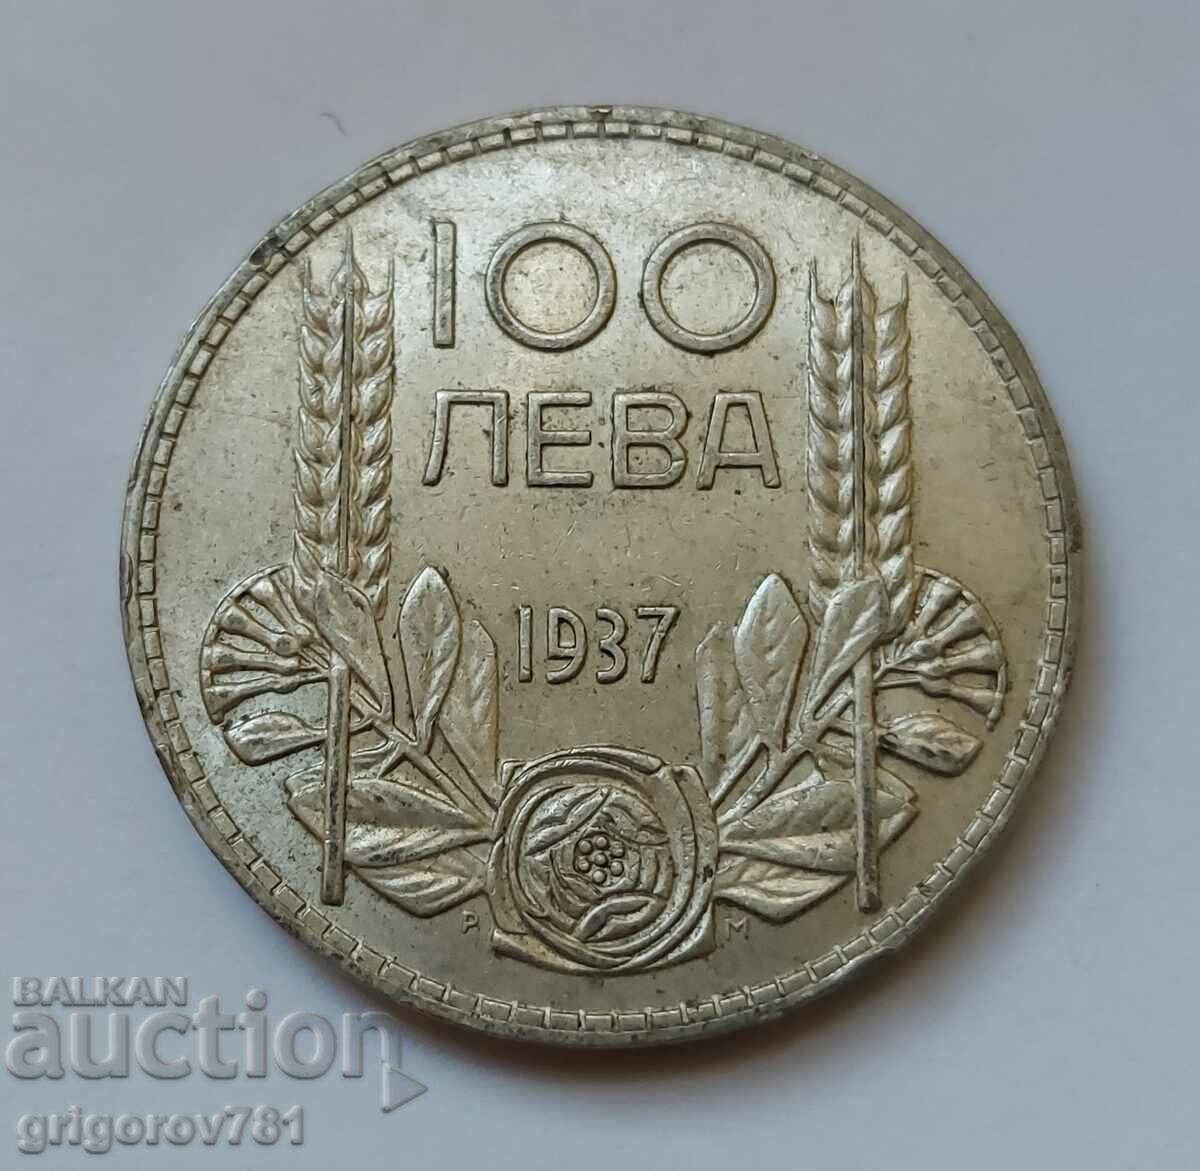 Ασήμι 100 λέβα Βουλγαρία 1937 - ασημένιο νόμισμα #83